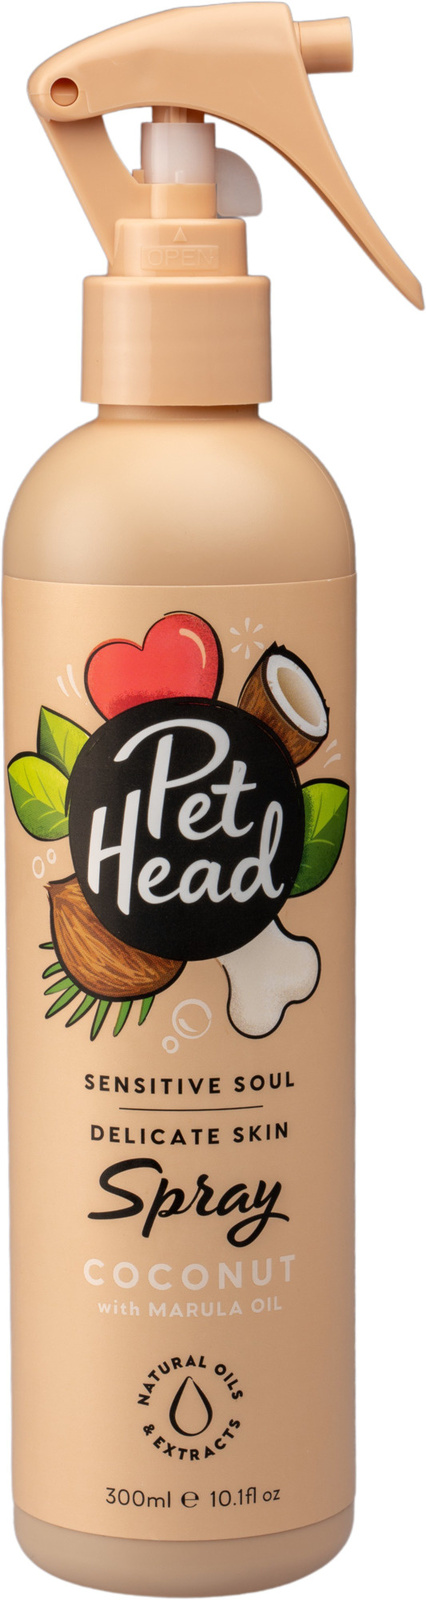 Pet Head Pet Head спрей для очищения шерсти собак Пушистый привереда с ароматом кокоса (303 г) pet head pet head спрей для очищения шерсти собак пушистый привереда с ароматом кокоса 303 г